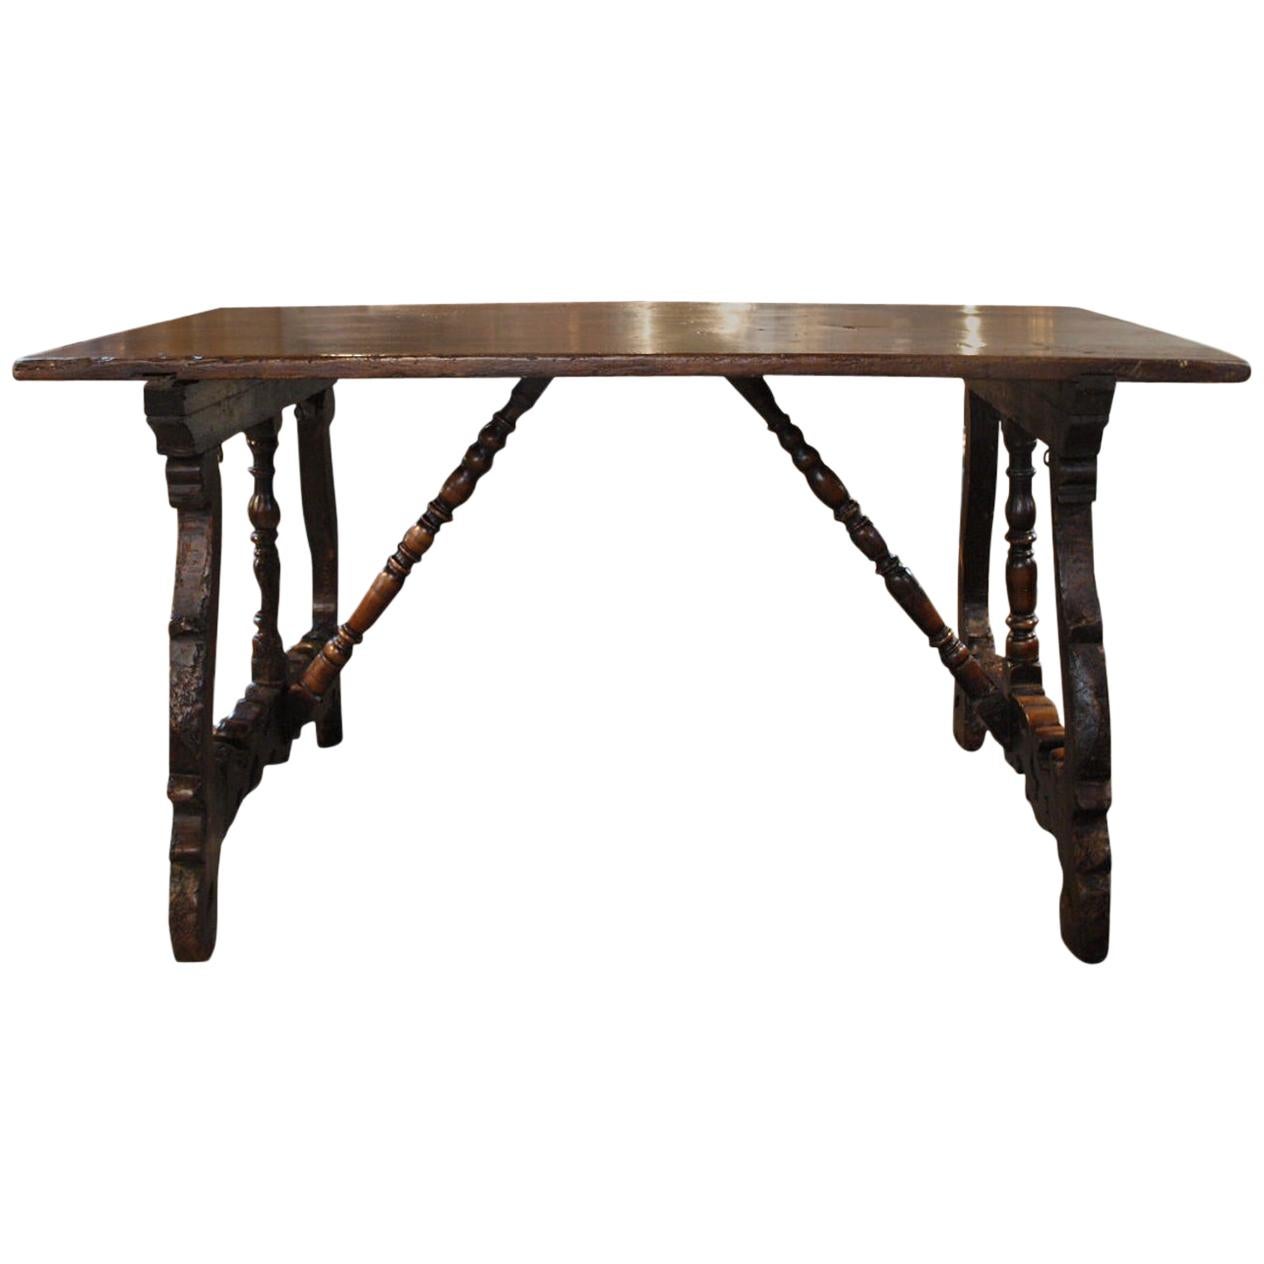 Eccezionale tavolo da scrittura in noce italiano del XVII secolo